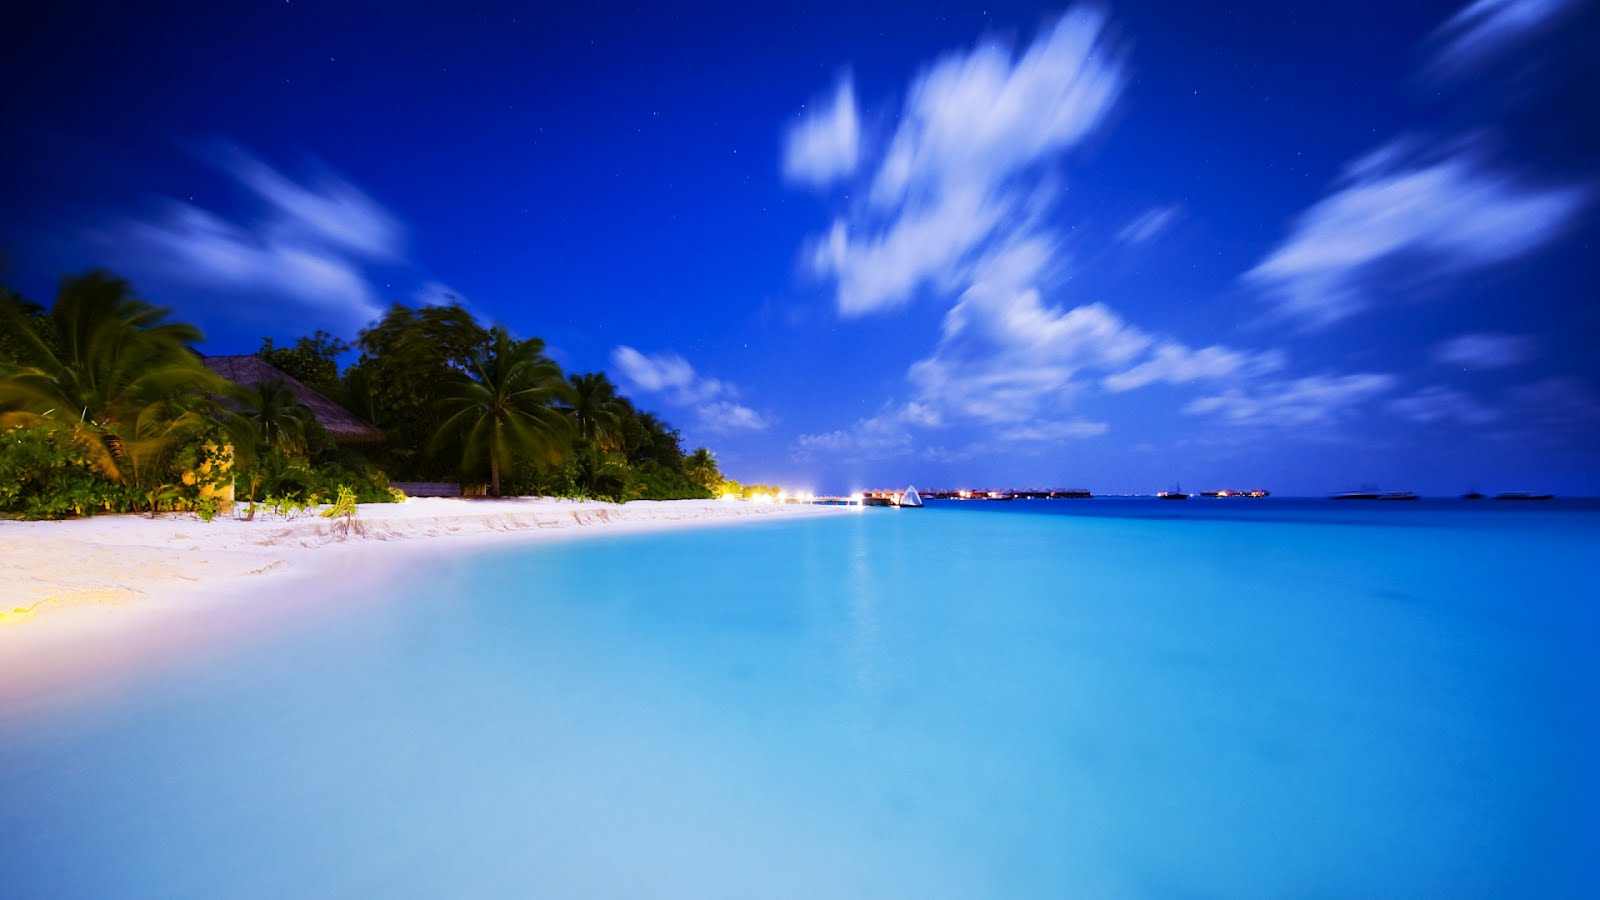 Maldives At Night HD Wallpaper For Desktop